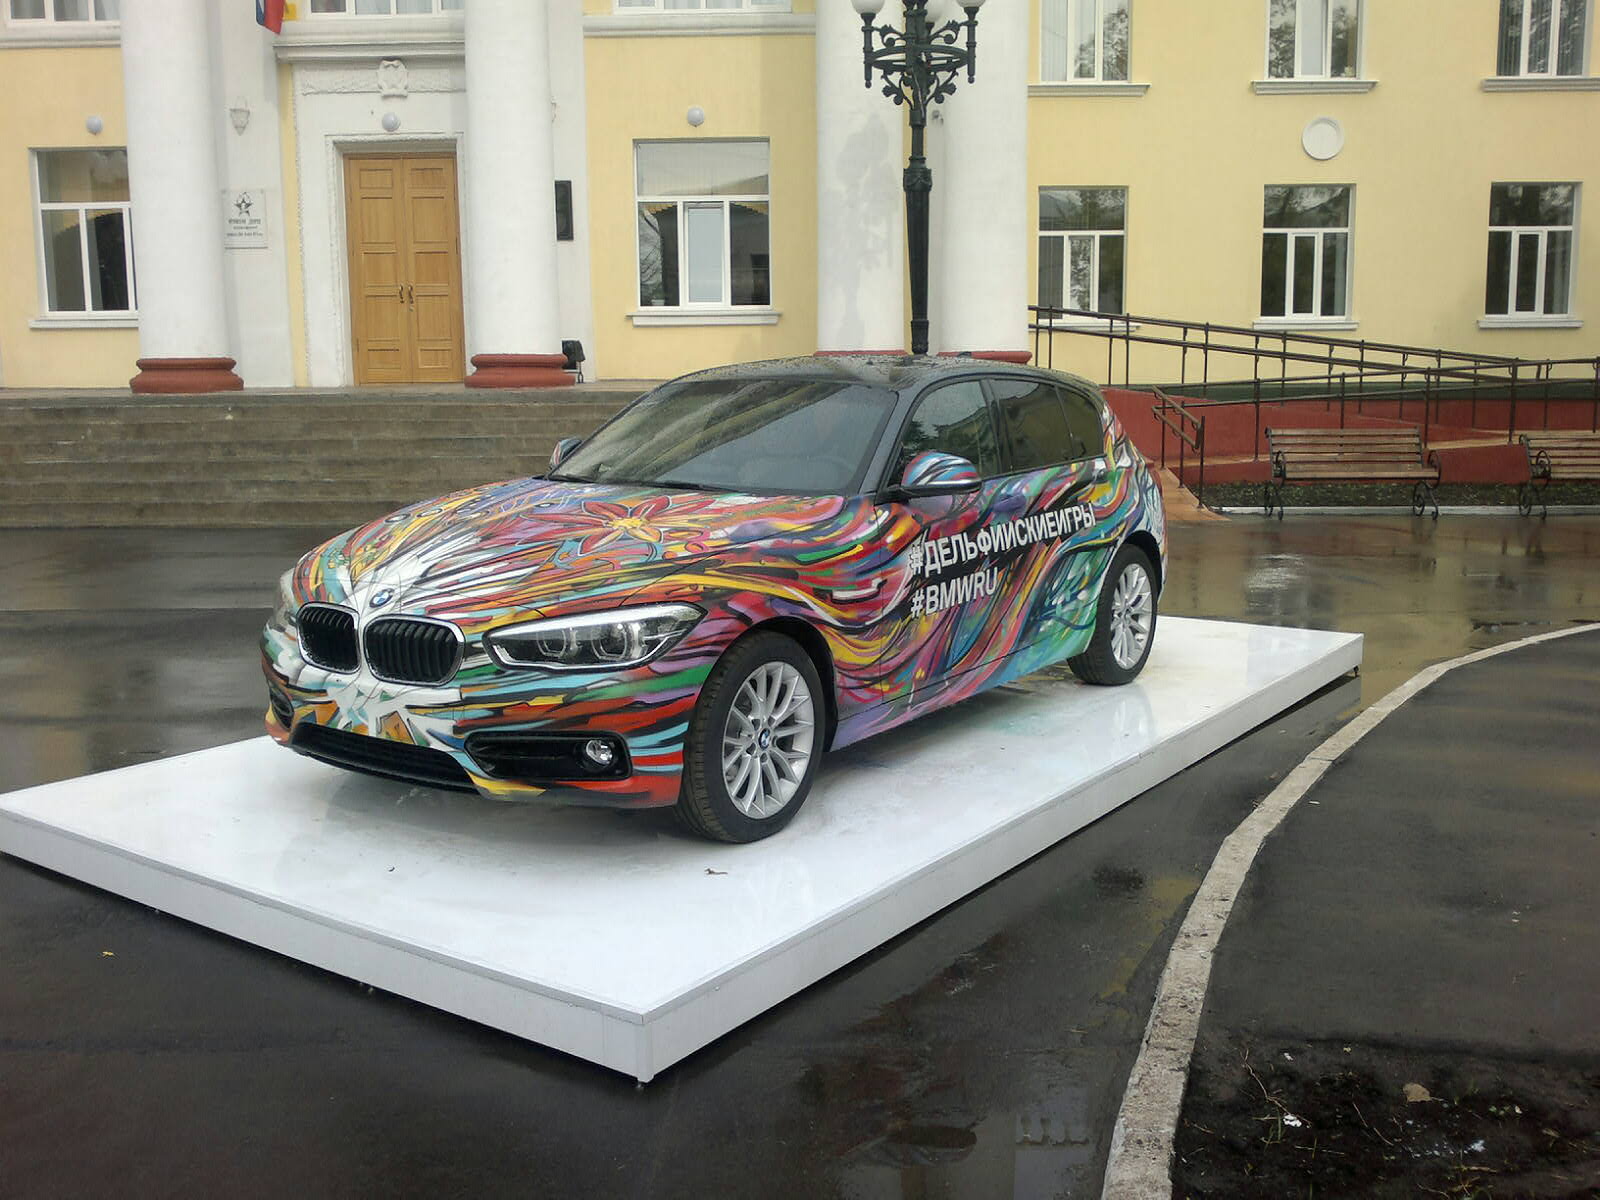 Участниками и гостями Культурного проекта «Дельфийский Орел – 2015» создан арт-объект на базе автомобиля BMW, специально привезенного компанией для Дельфийских игр